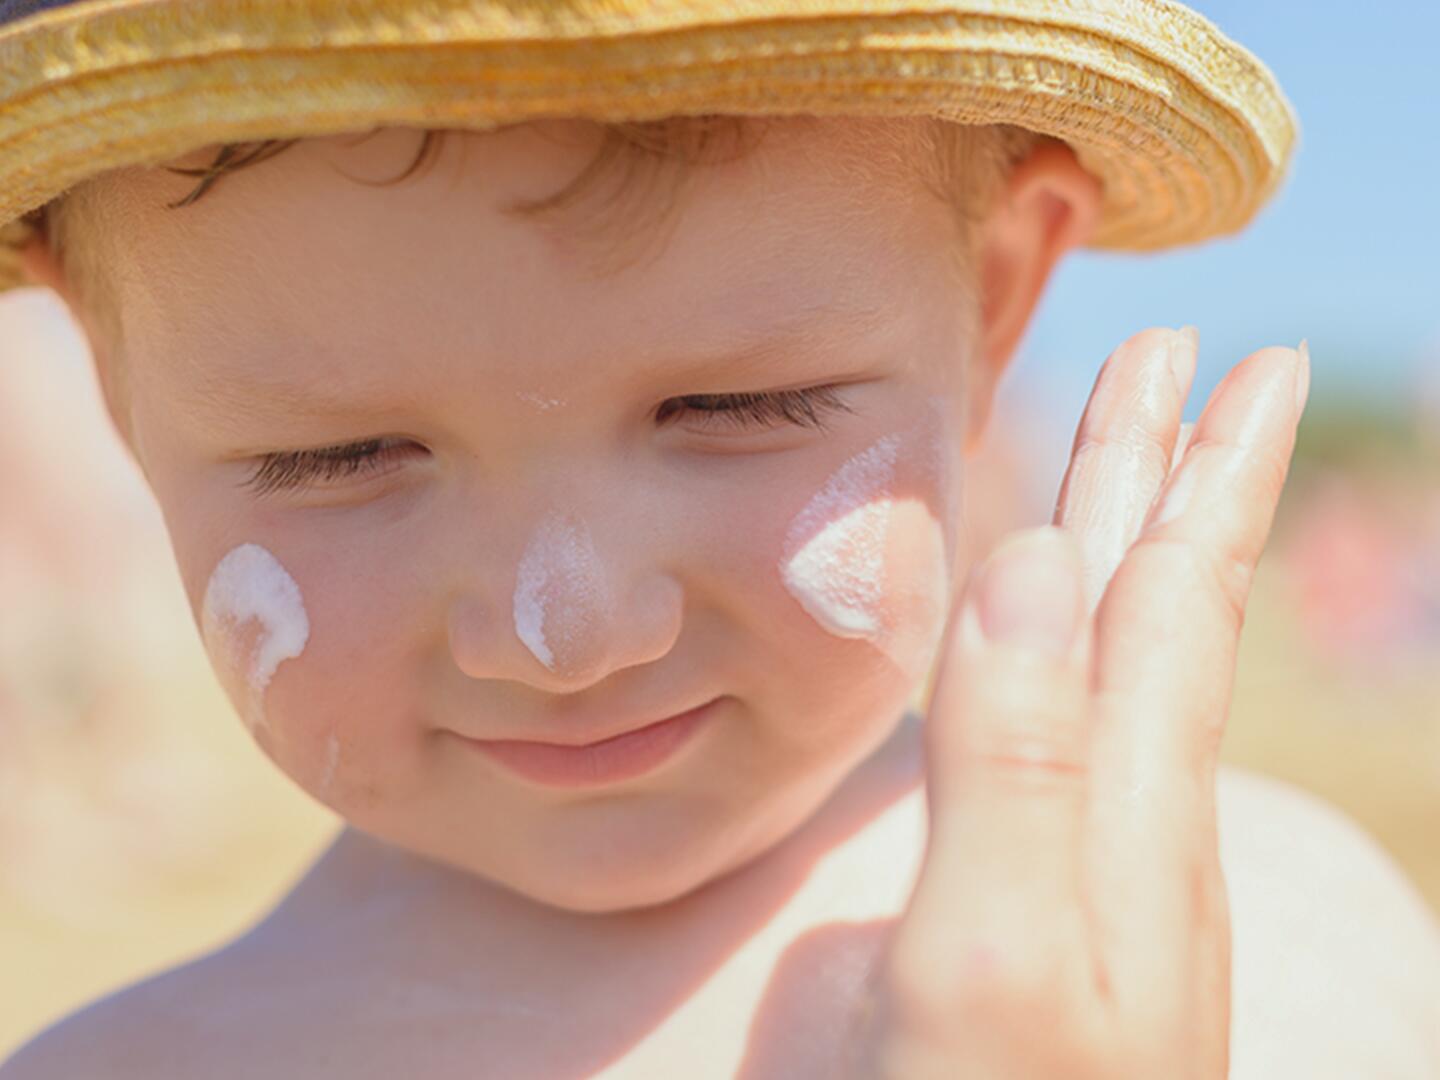 Sonnenschutz für Babys, Was ist zu beachten